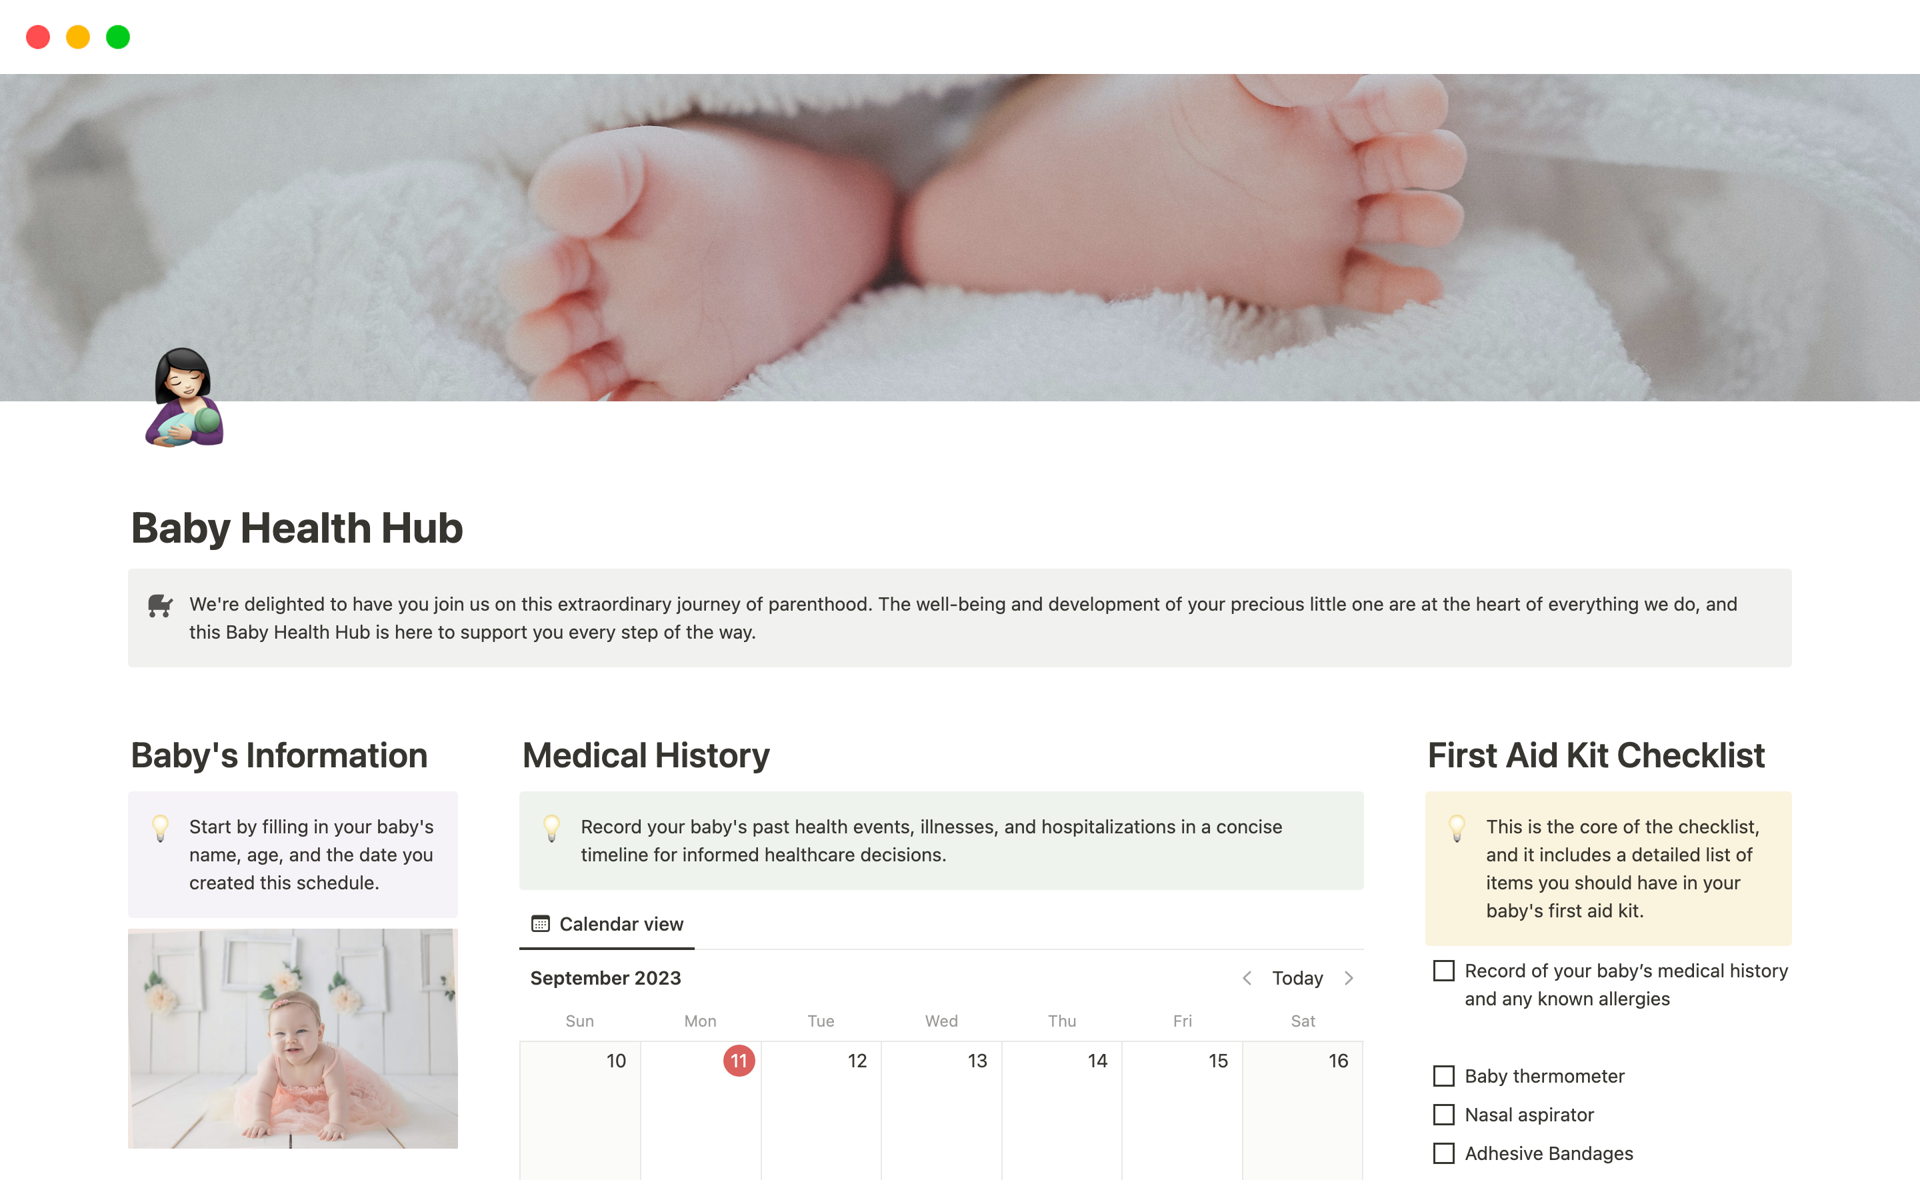 En förhandsgranskning av mallen för Baby Health Hub